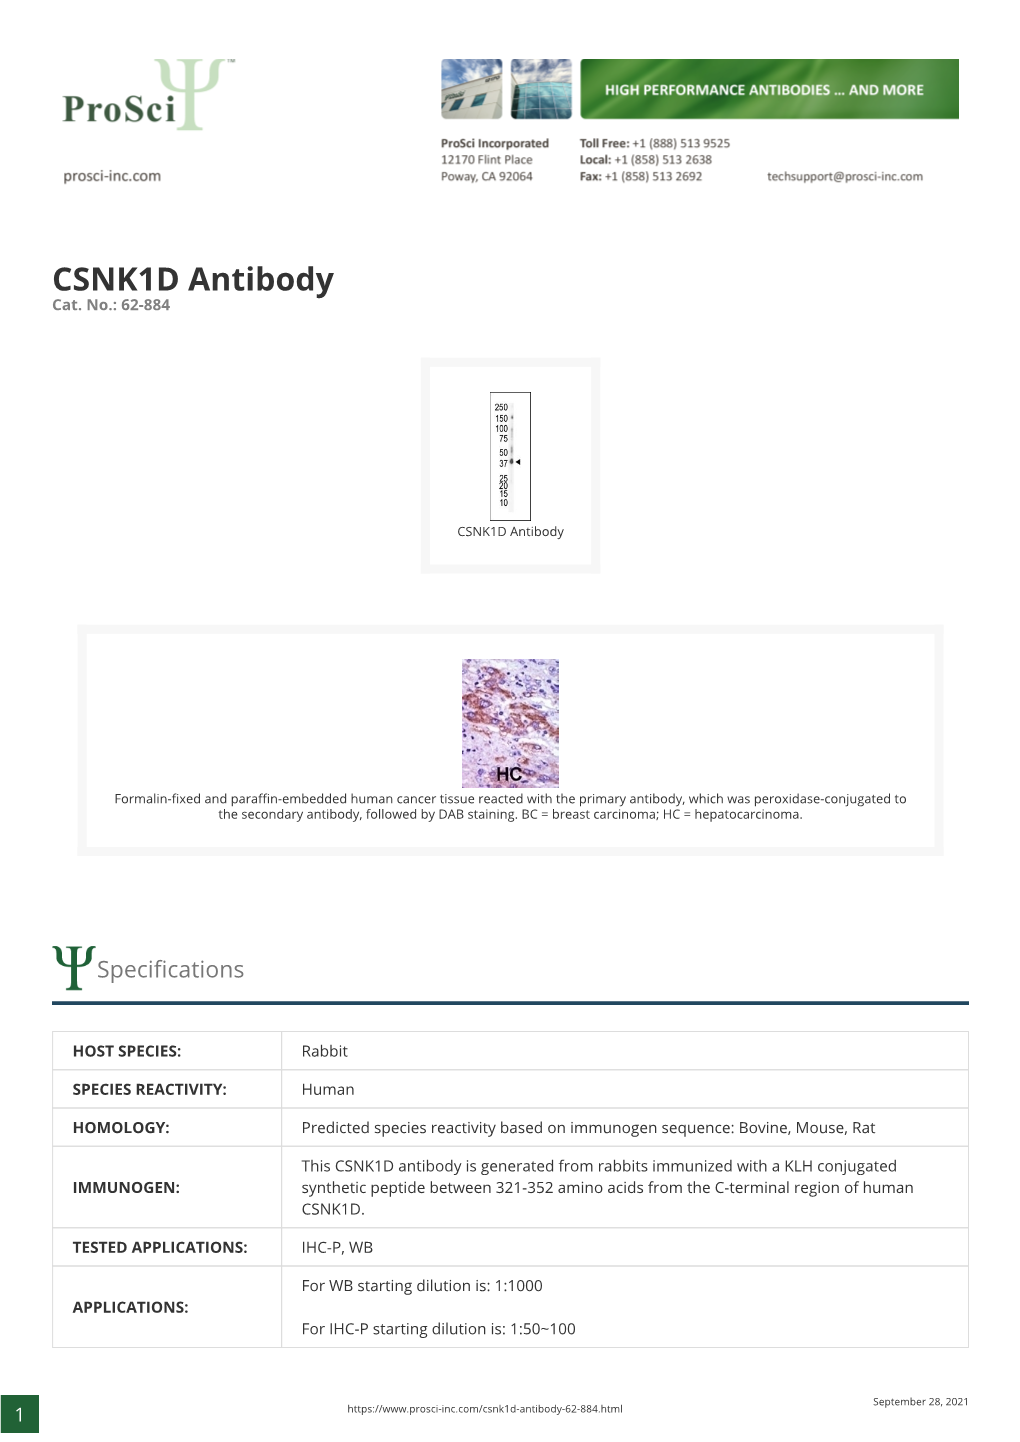 CSNK1D Antibody Cat